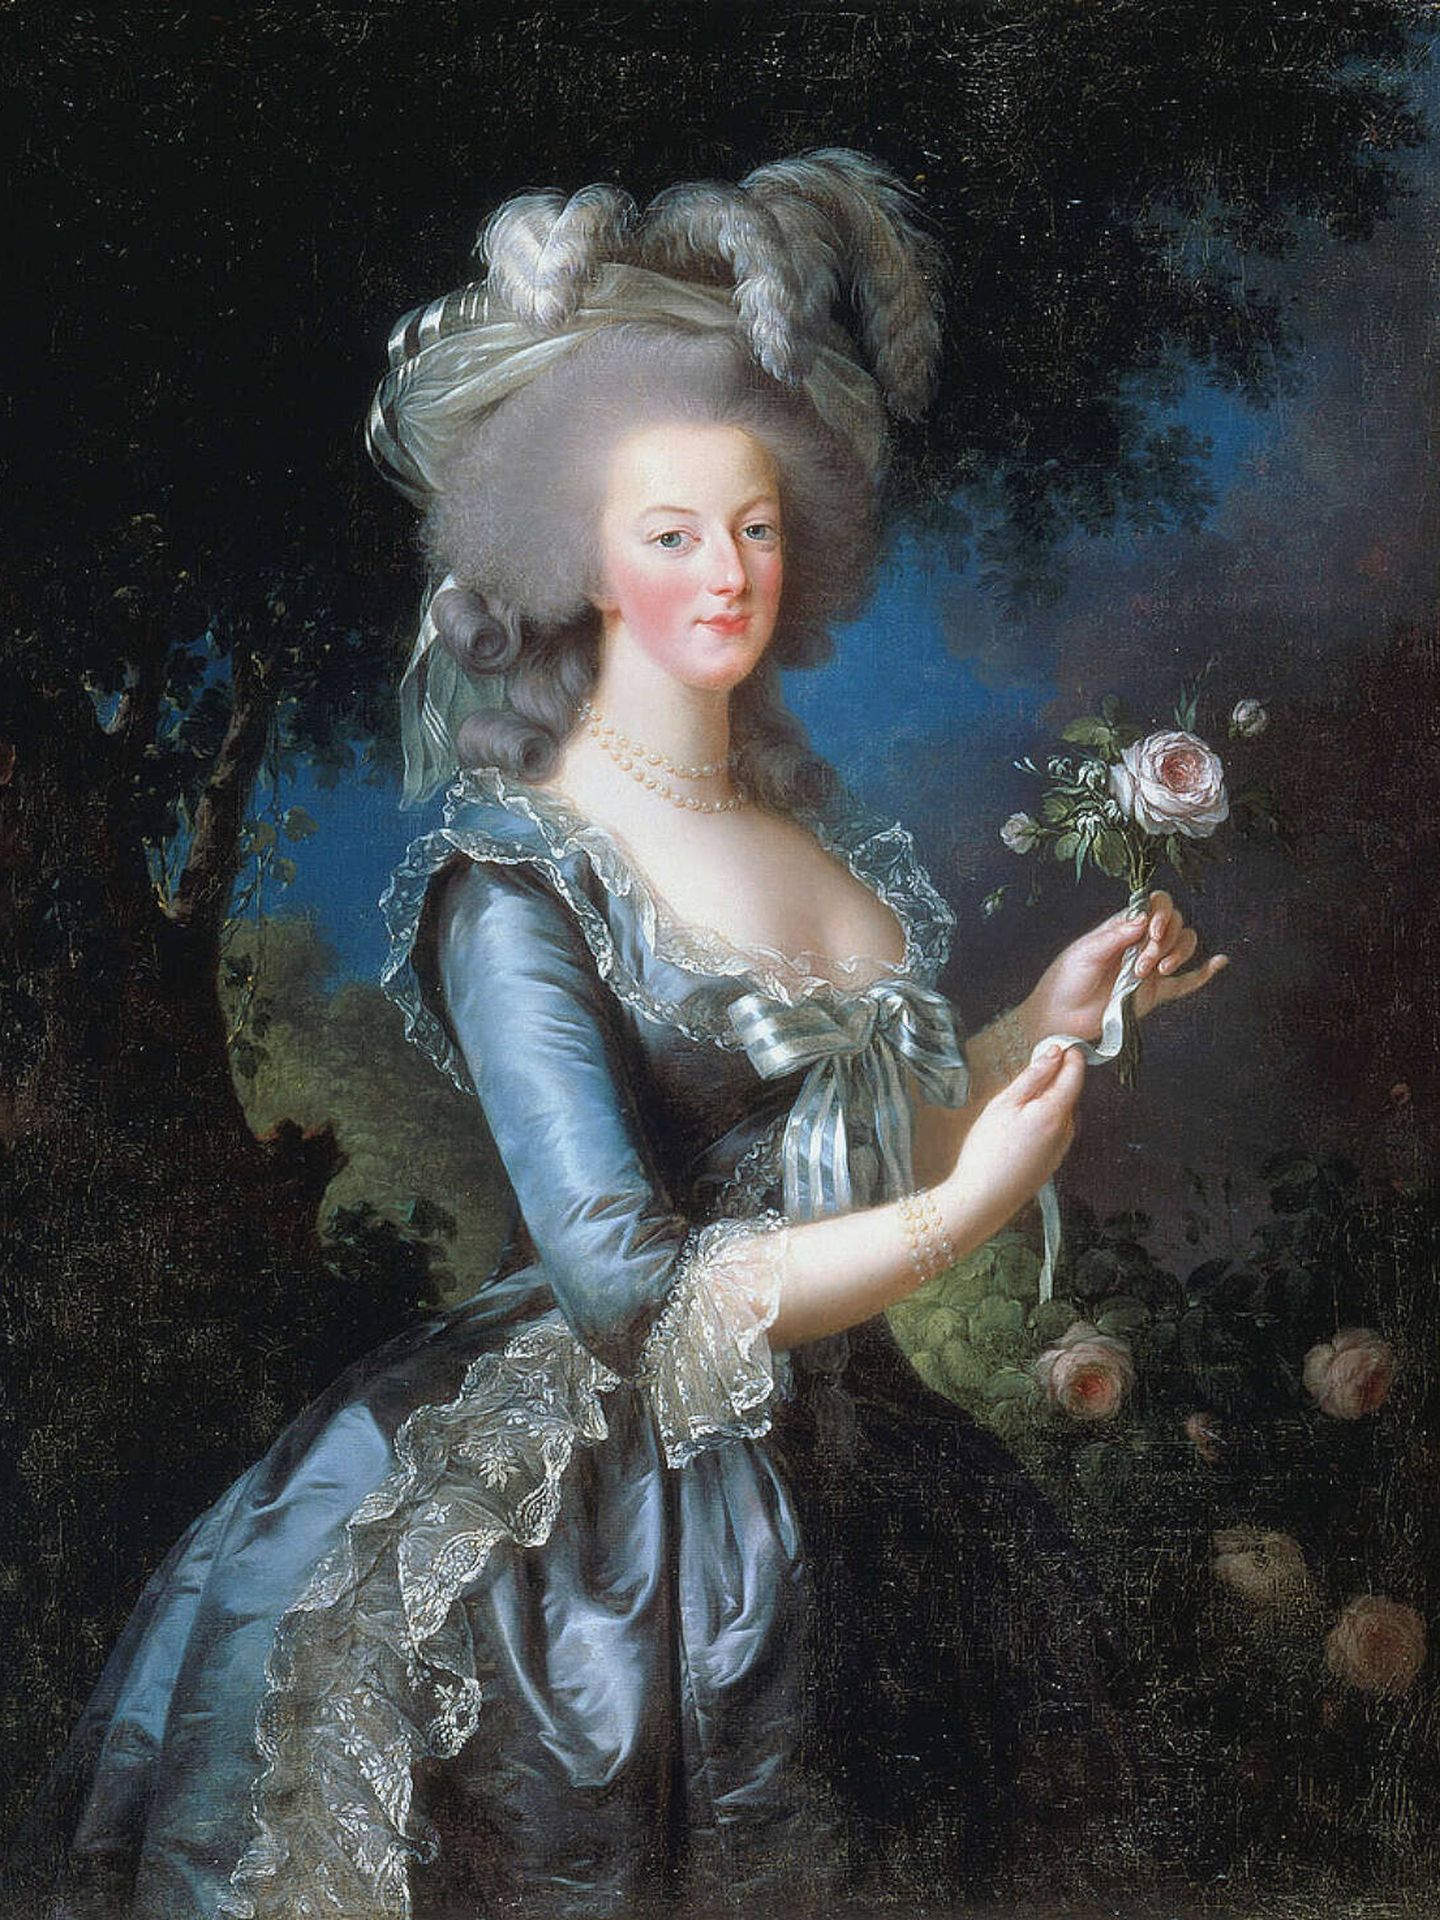 Retrato que Vigeé Le Brun hizo de María Antonieta en 1783 